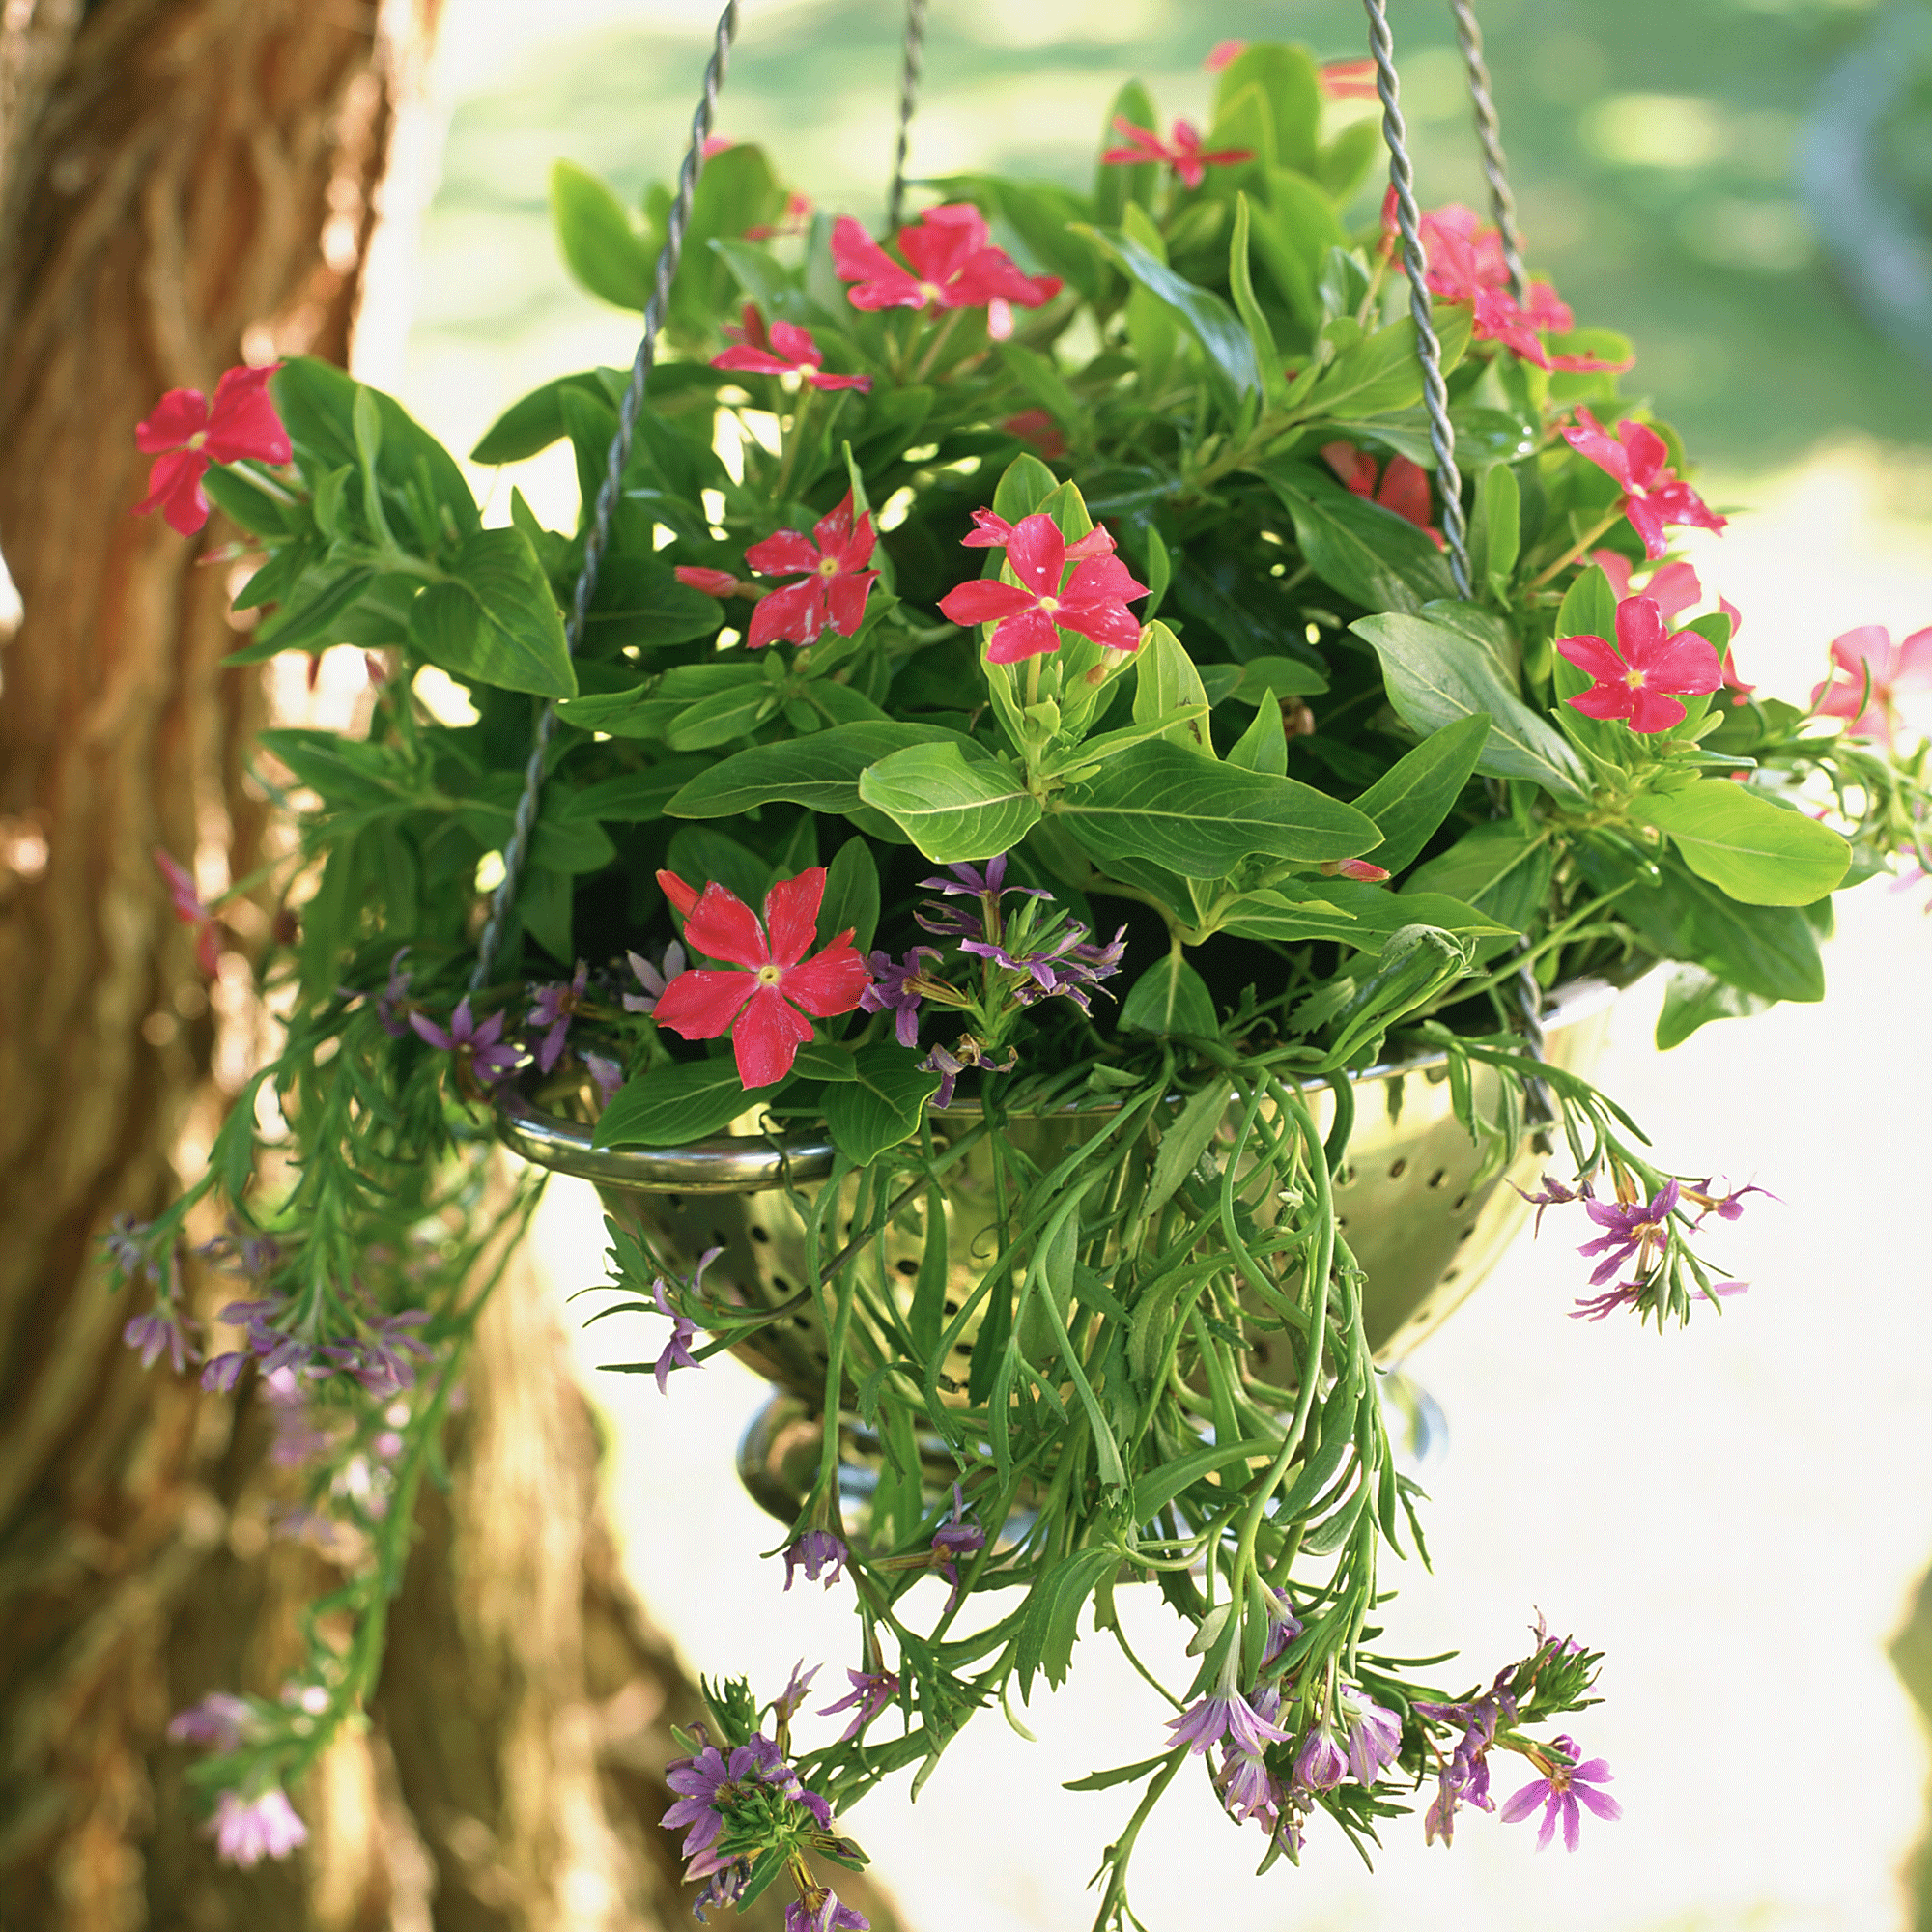 Hanging basket in a colander